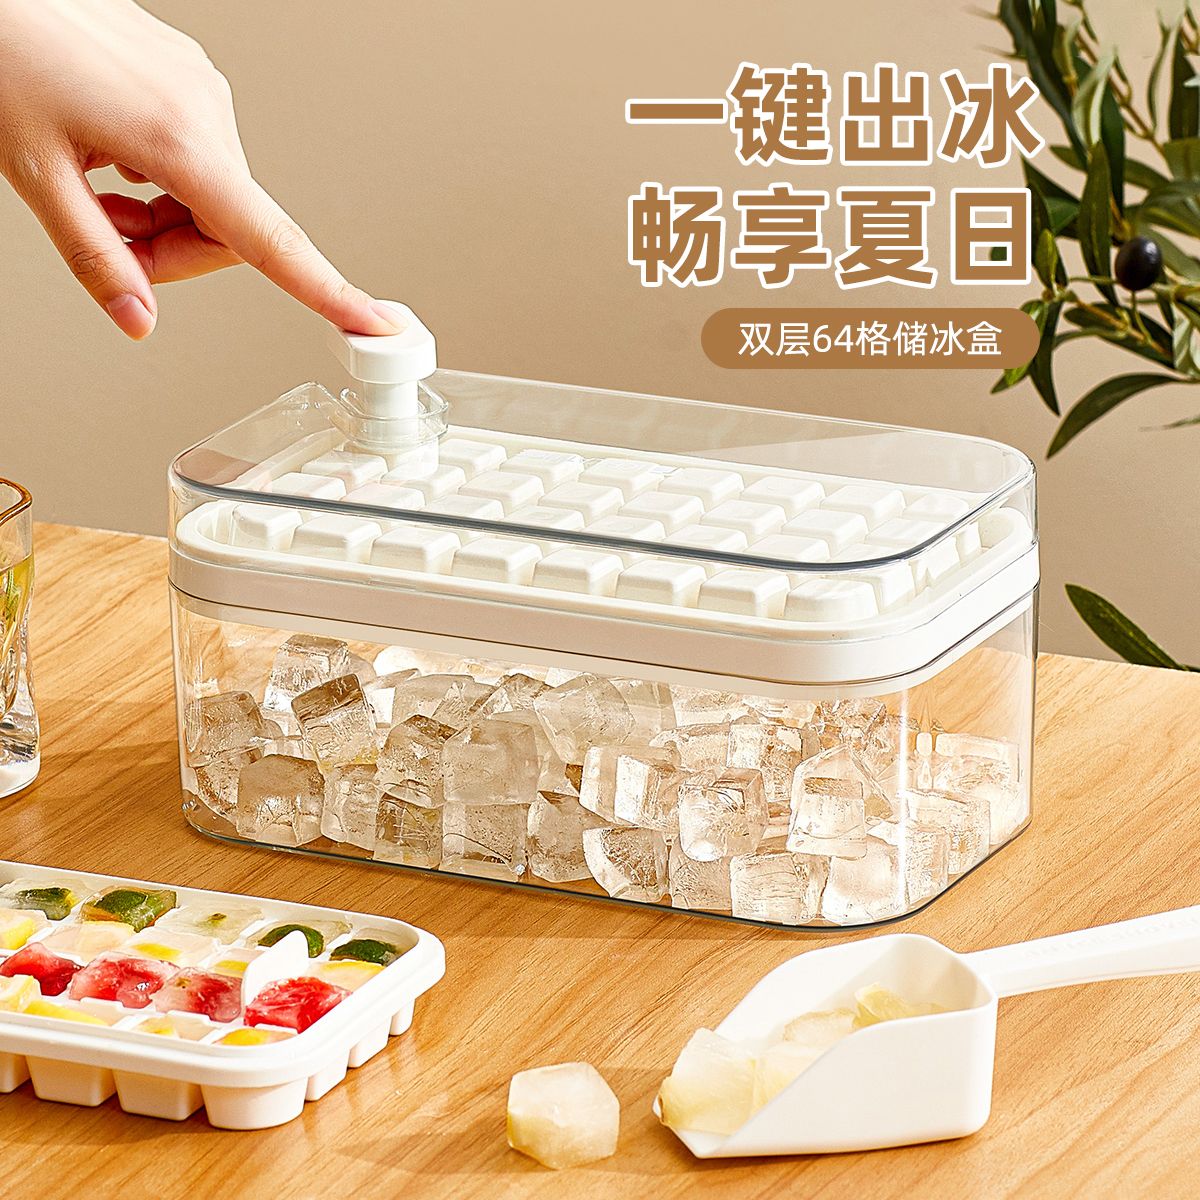 方塊製冰盒冰塊模具食品級按壓冰格家用冰箱自制冰塊儲存盒凍冰塊神器制冰塊